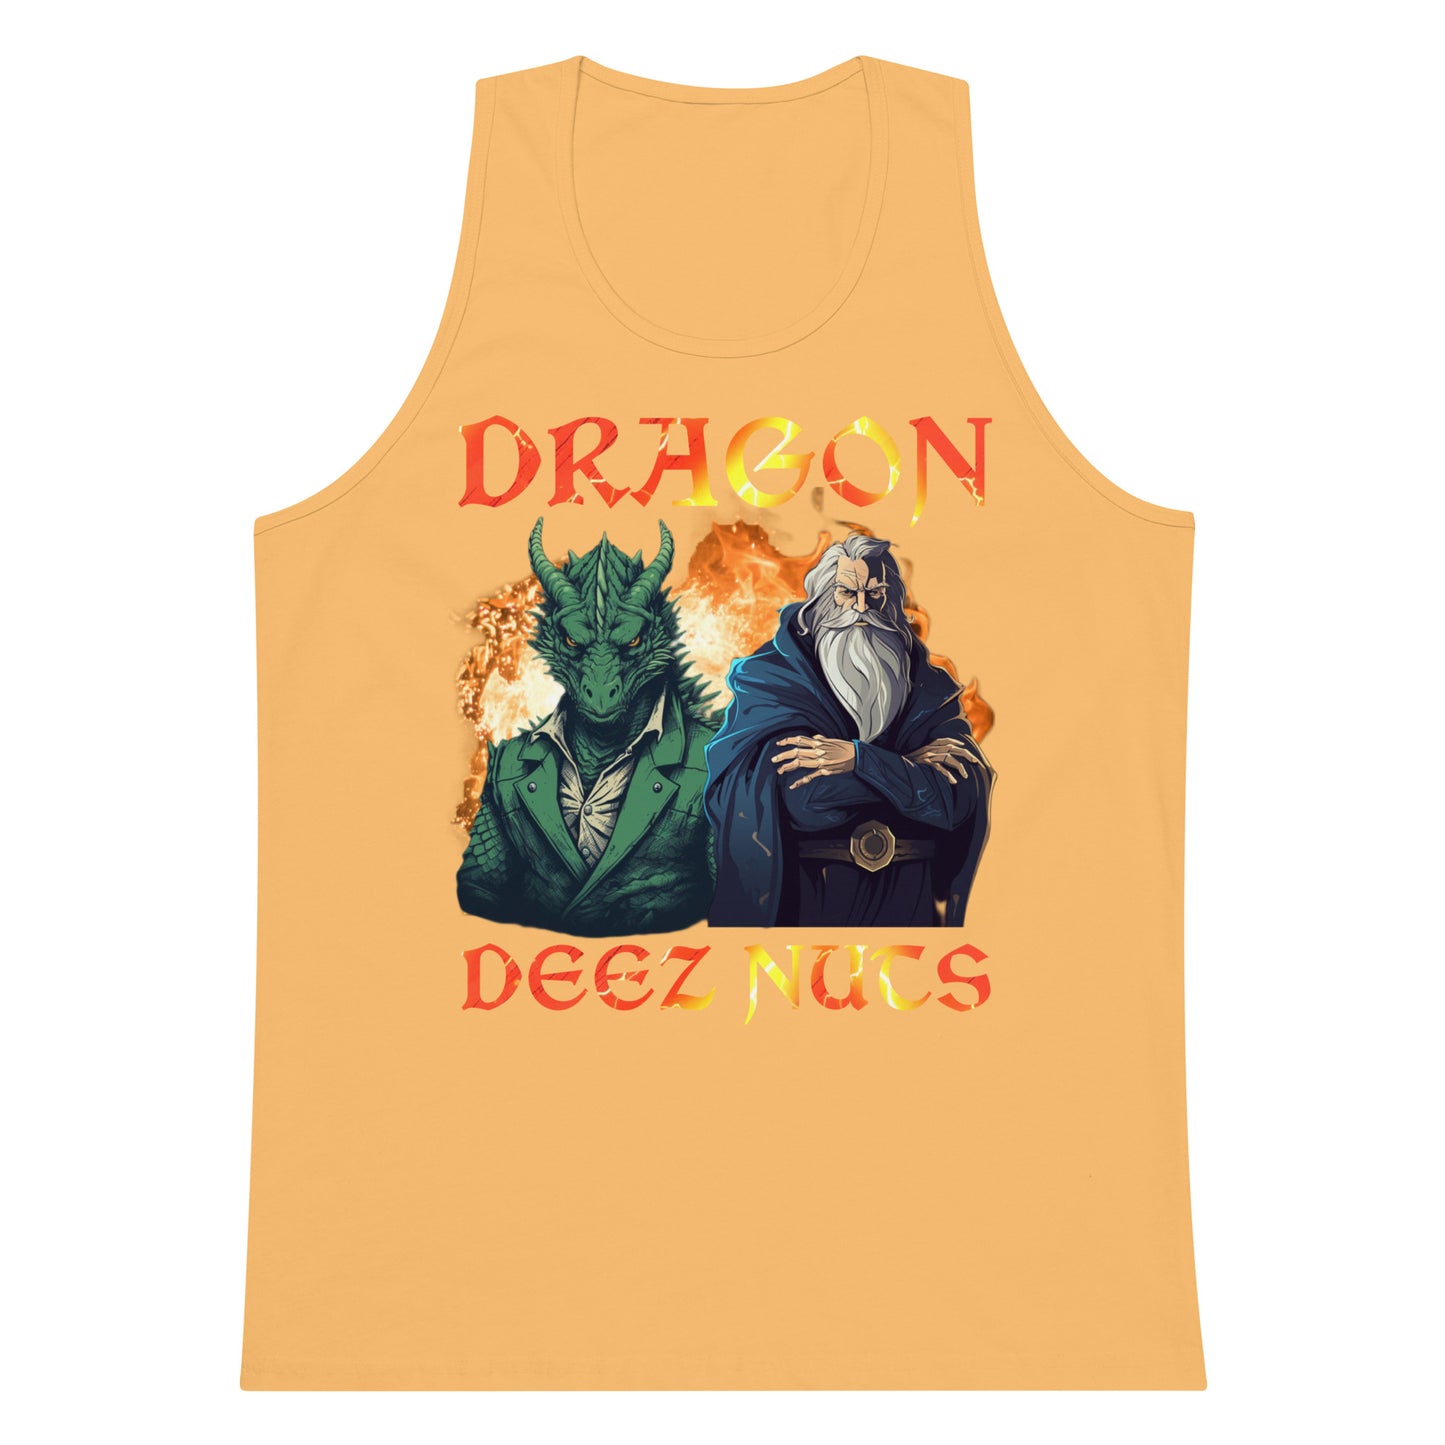 Dragon deez nutz (tank top)